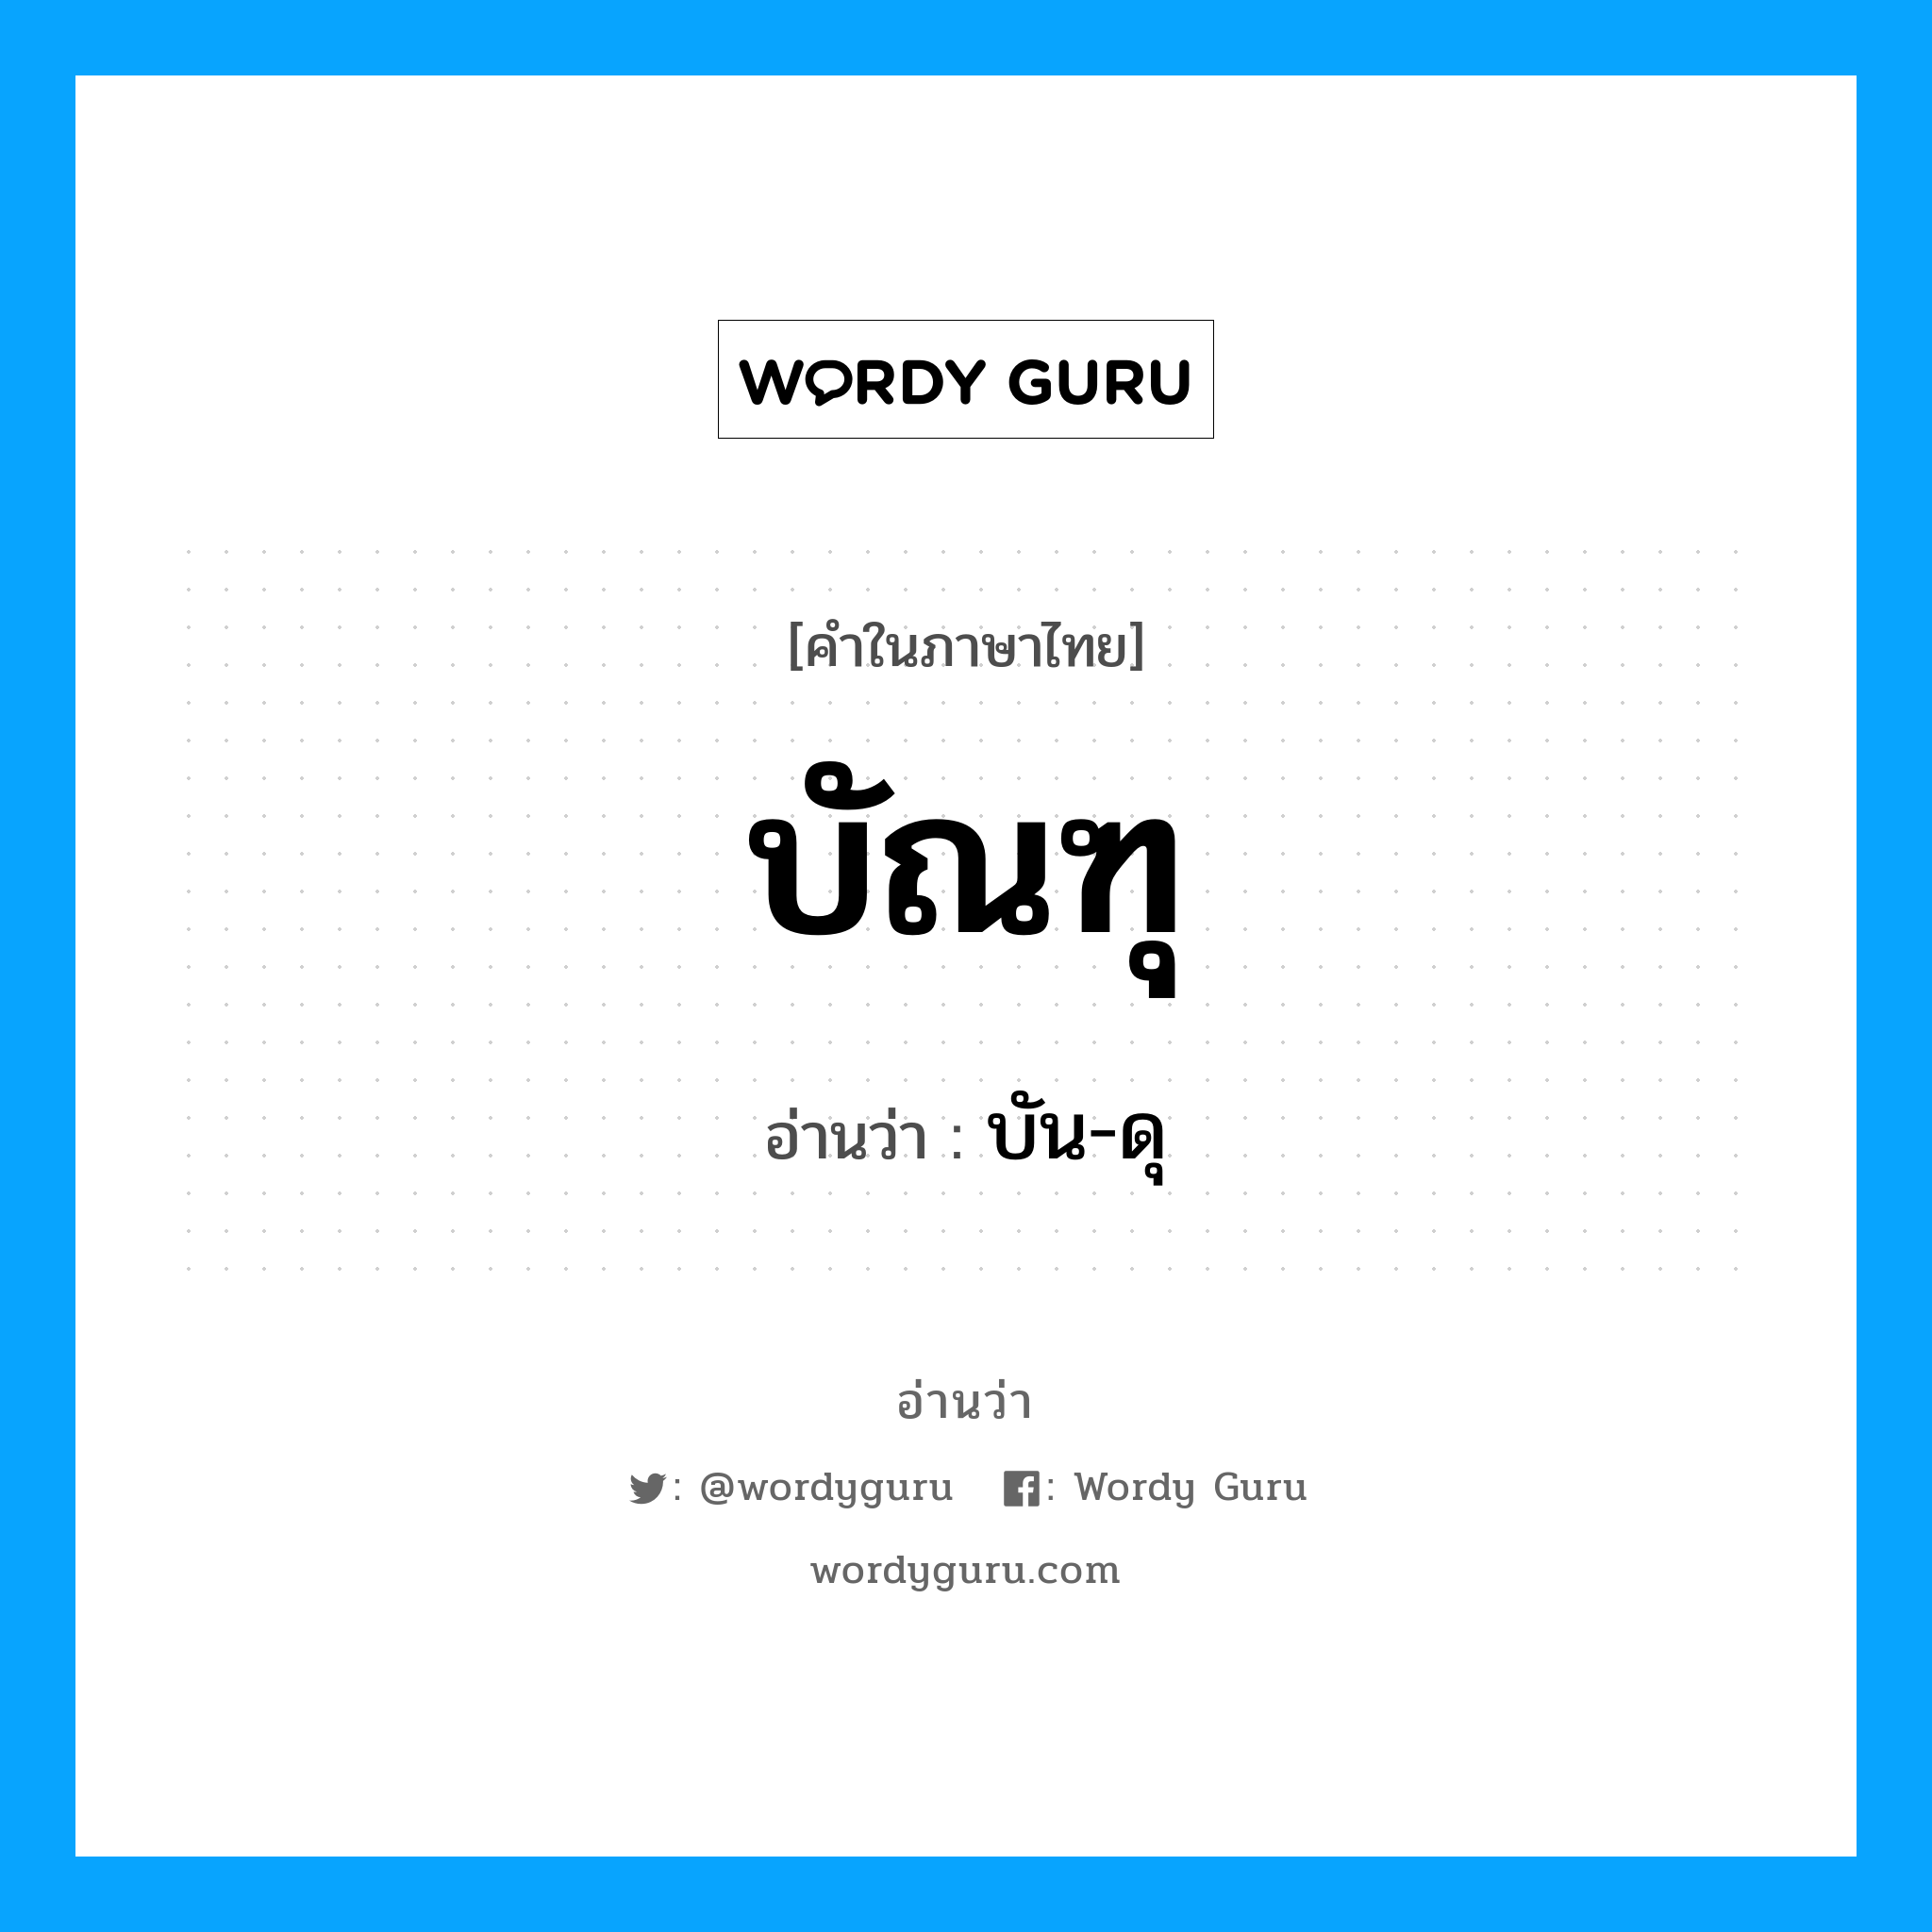 บัน-ดุ เป็นคำอ่านของคำไหน?, คำในภาษาไทย บัน-ดุ อ่านว่า บัณฑุ